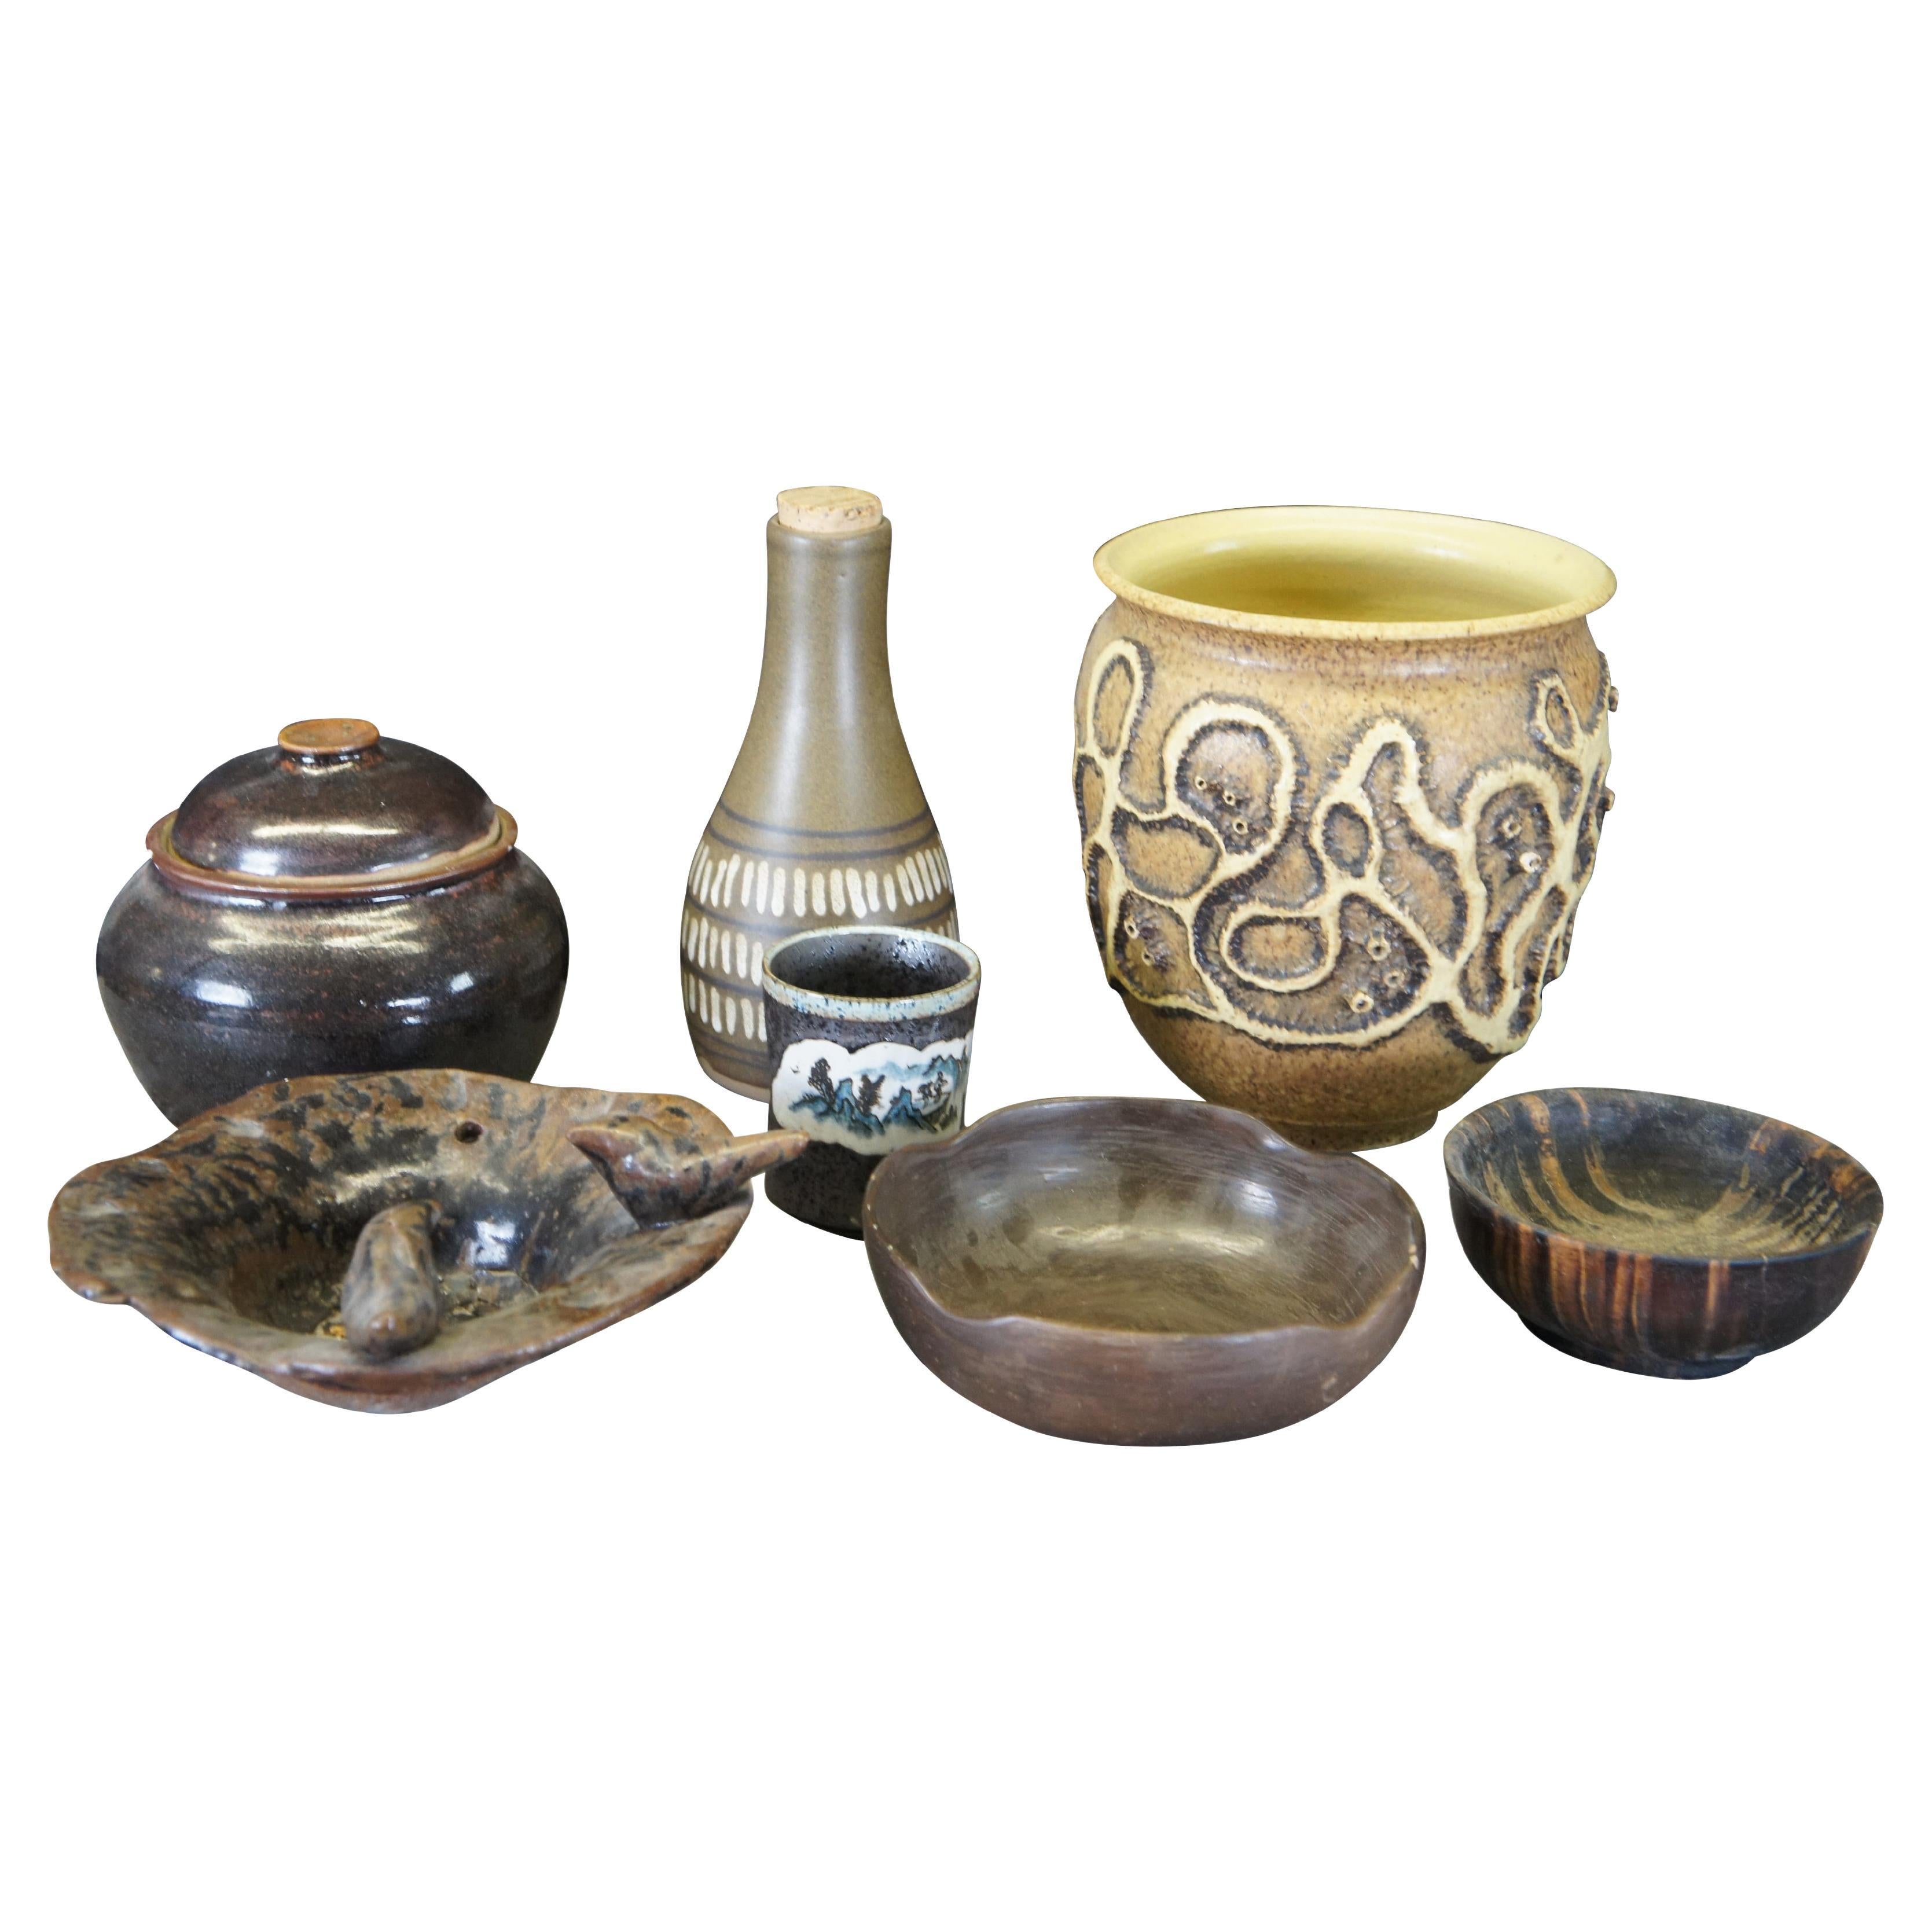 Lot of 7 Midcentury Southwestern Ceramic Art Pottery Bowls Vase Pot Lidded Jar For Sale